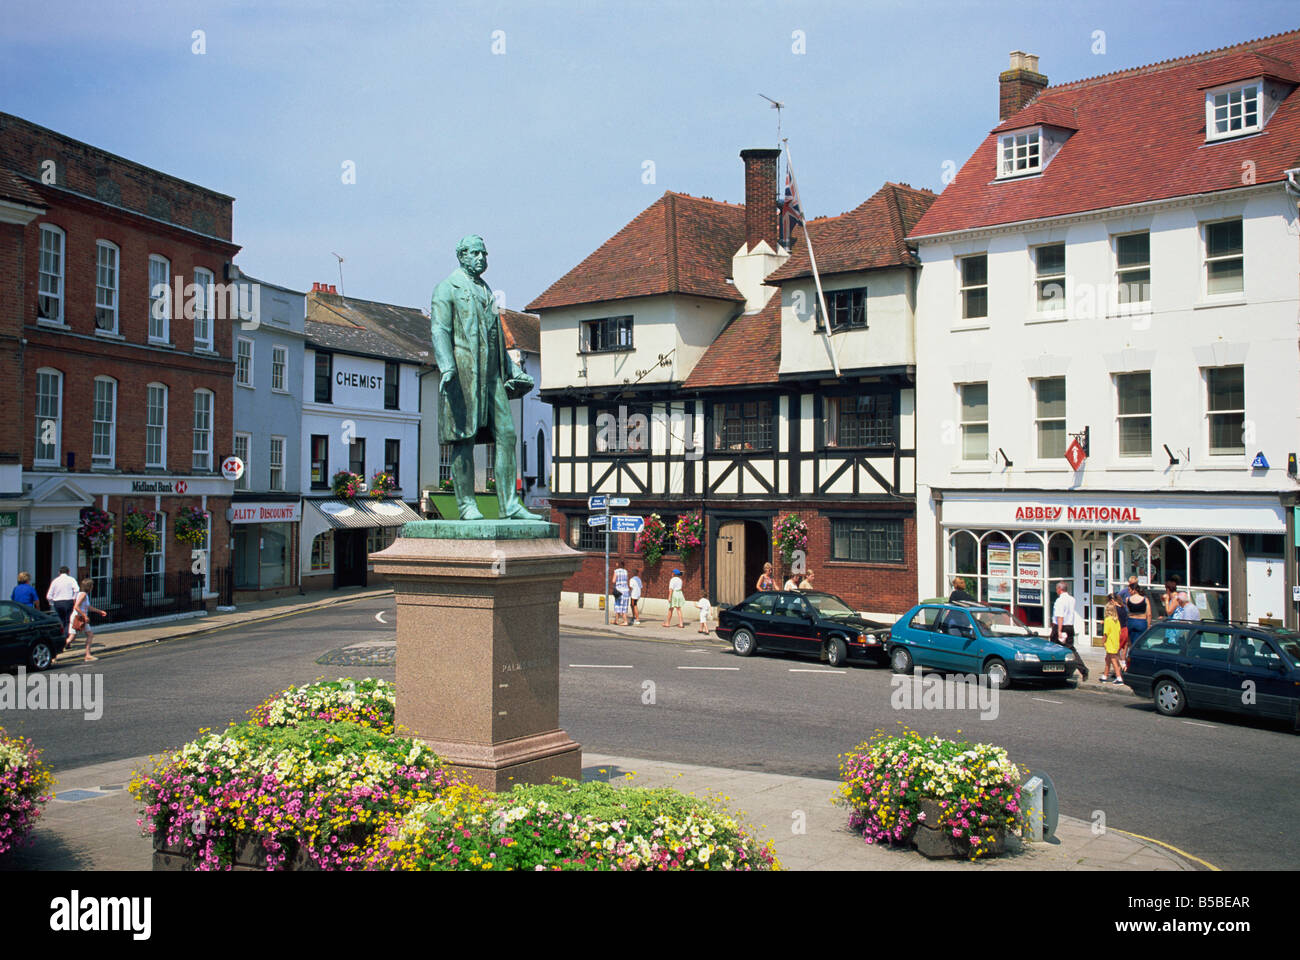 Maket Square et statue de Palmerston, Romsey, Hampshire, Angleterre, Europe Banque D'Images